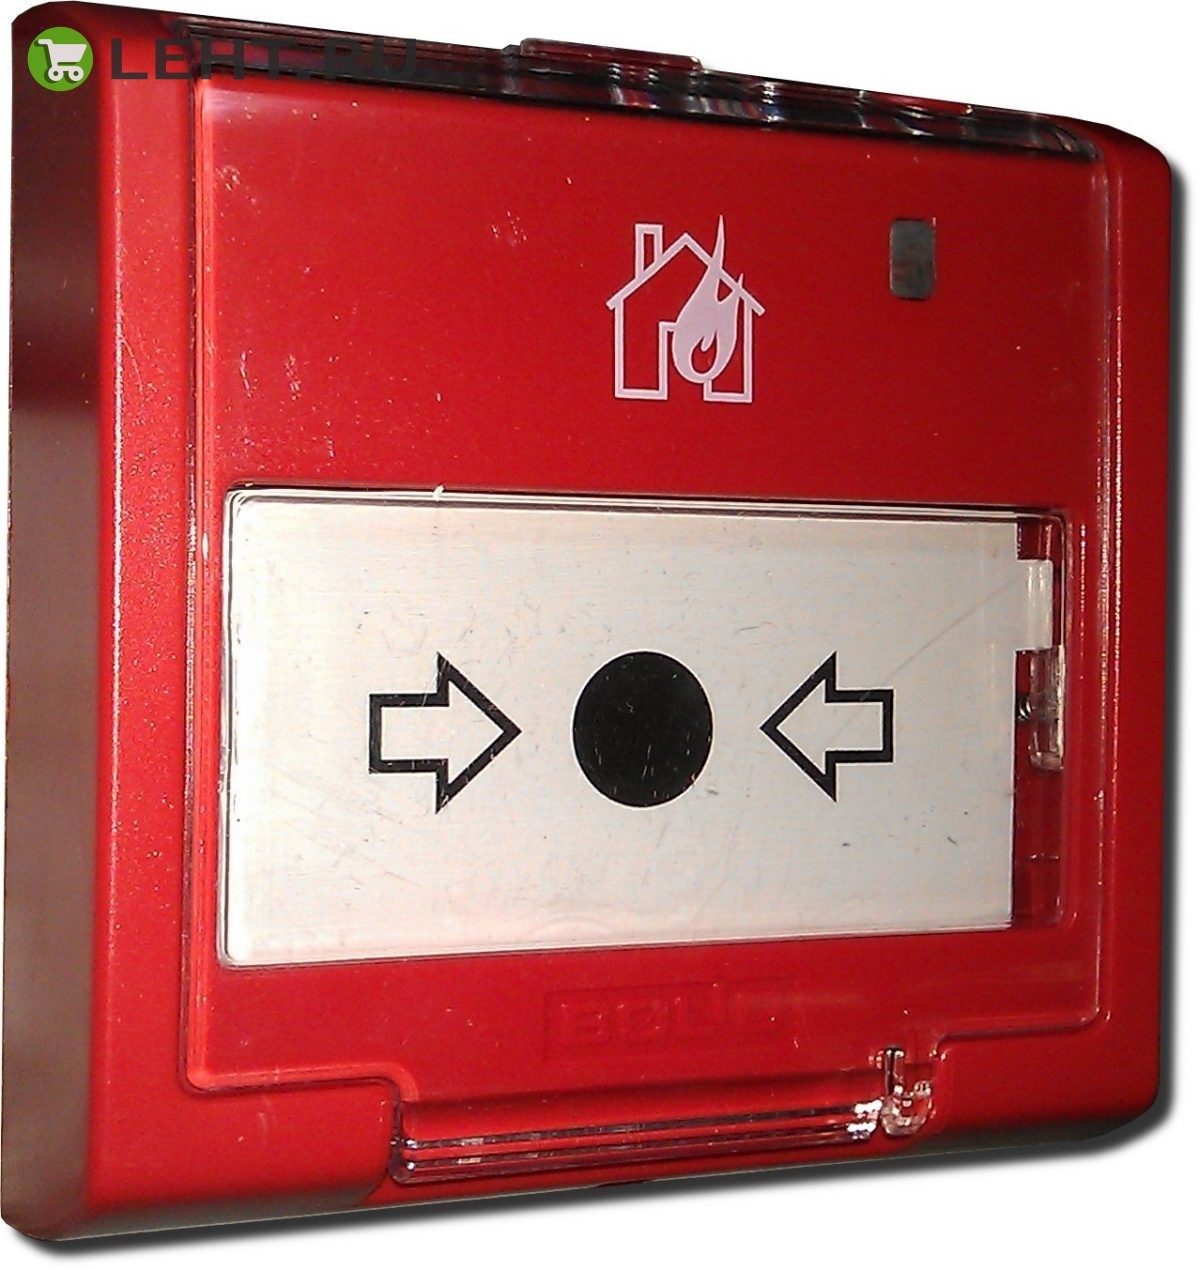 ИПР 513-3ПАМ: Извещатель пожарный ручной адресный